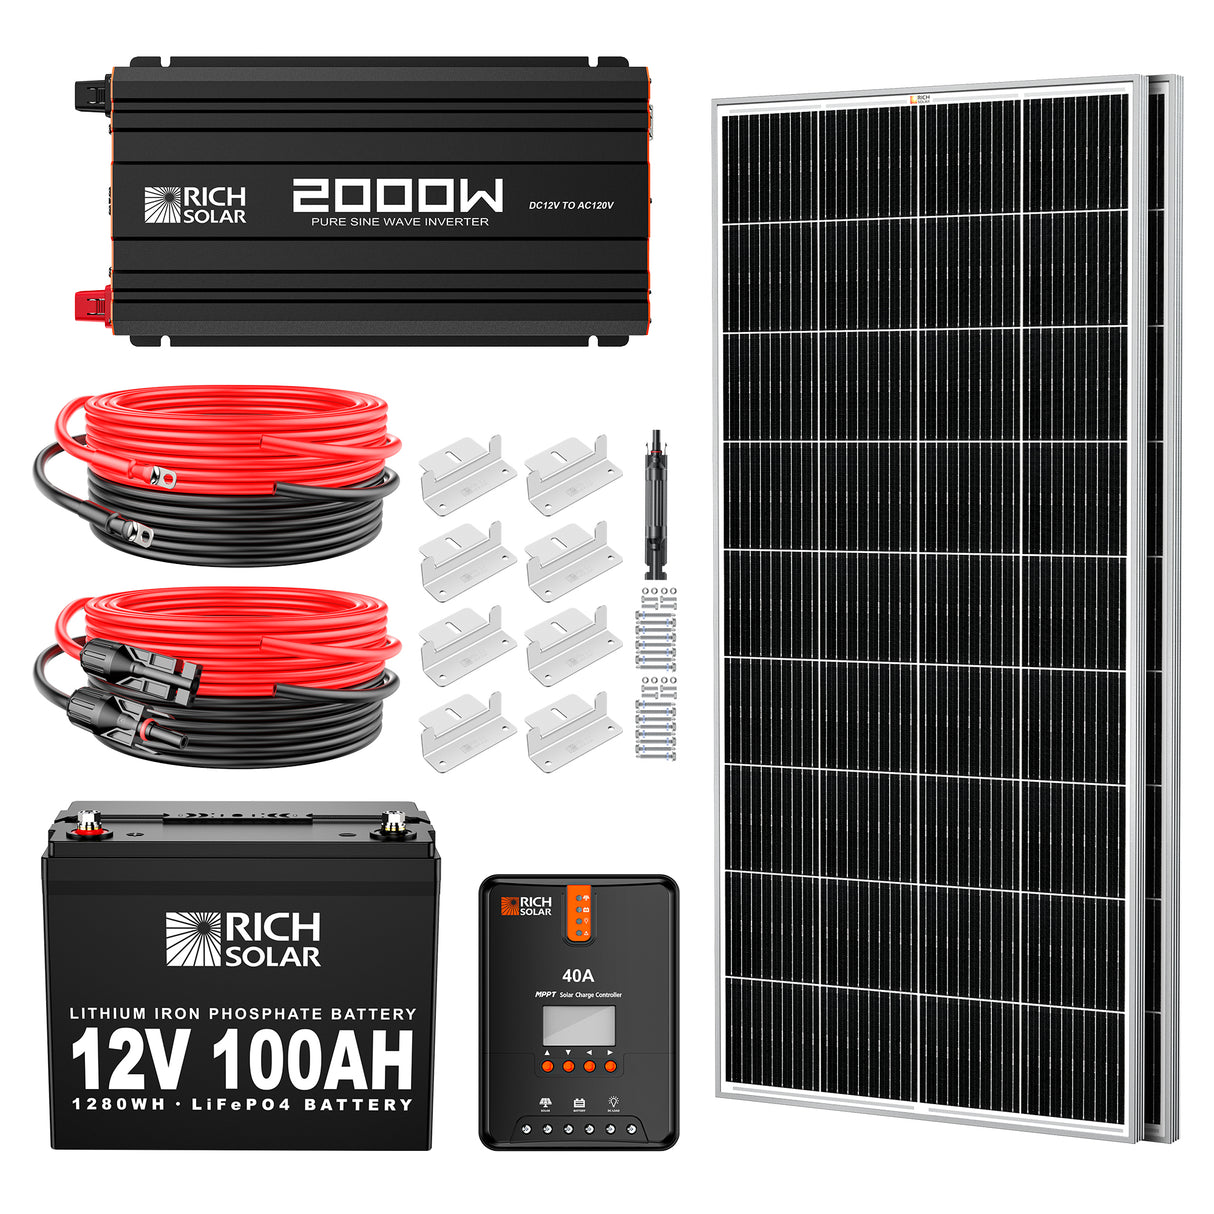 400 Watt Complete Solar Kit - RICH SOLAR